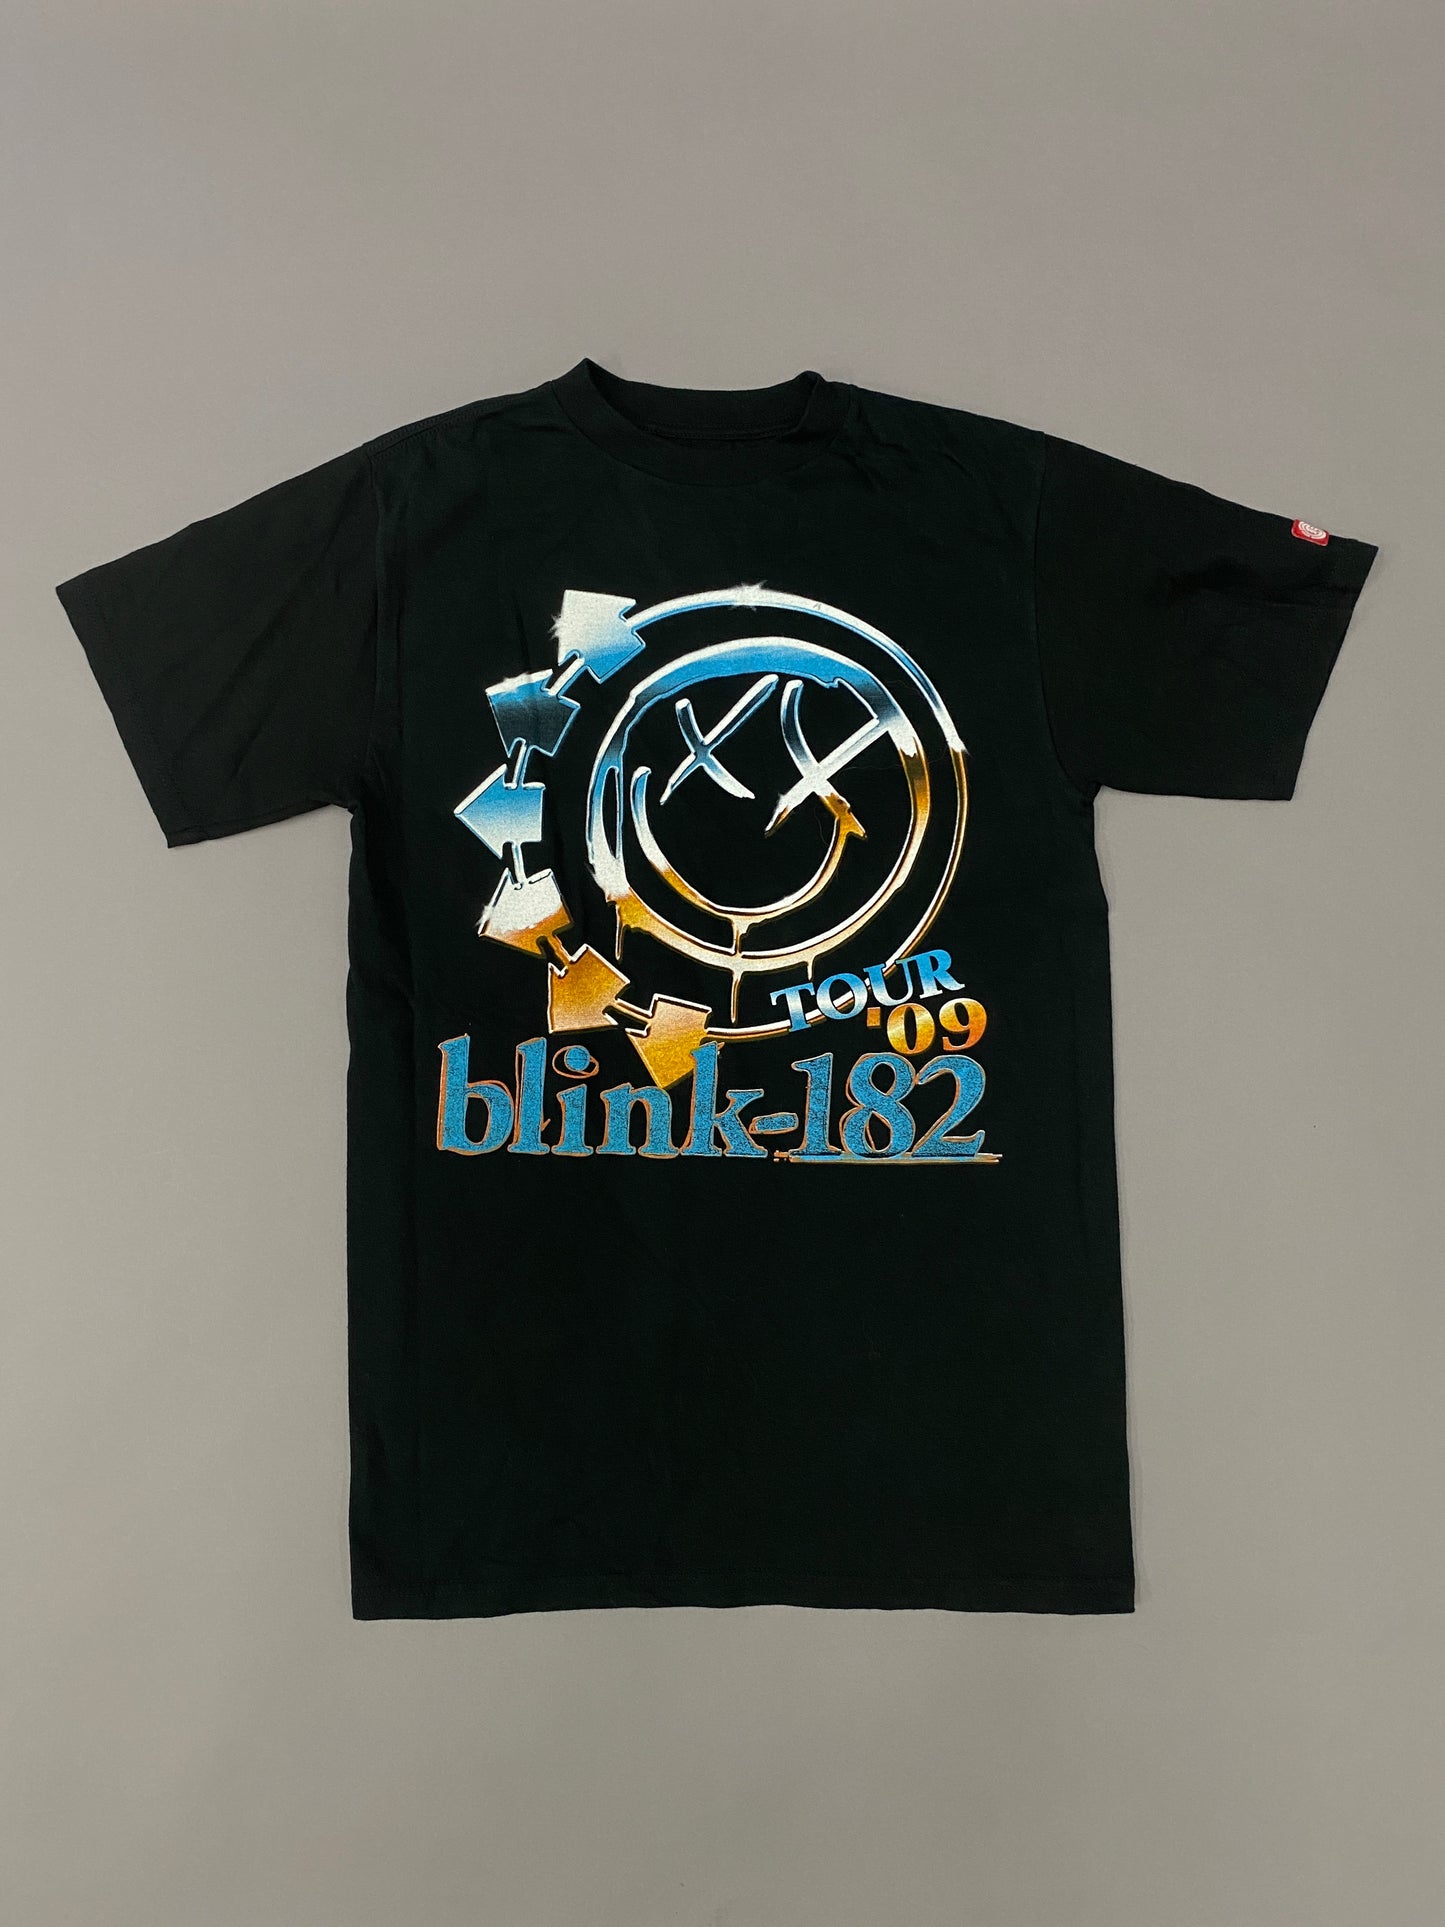 Blink 182 2009 T-shirt